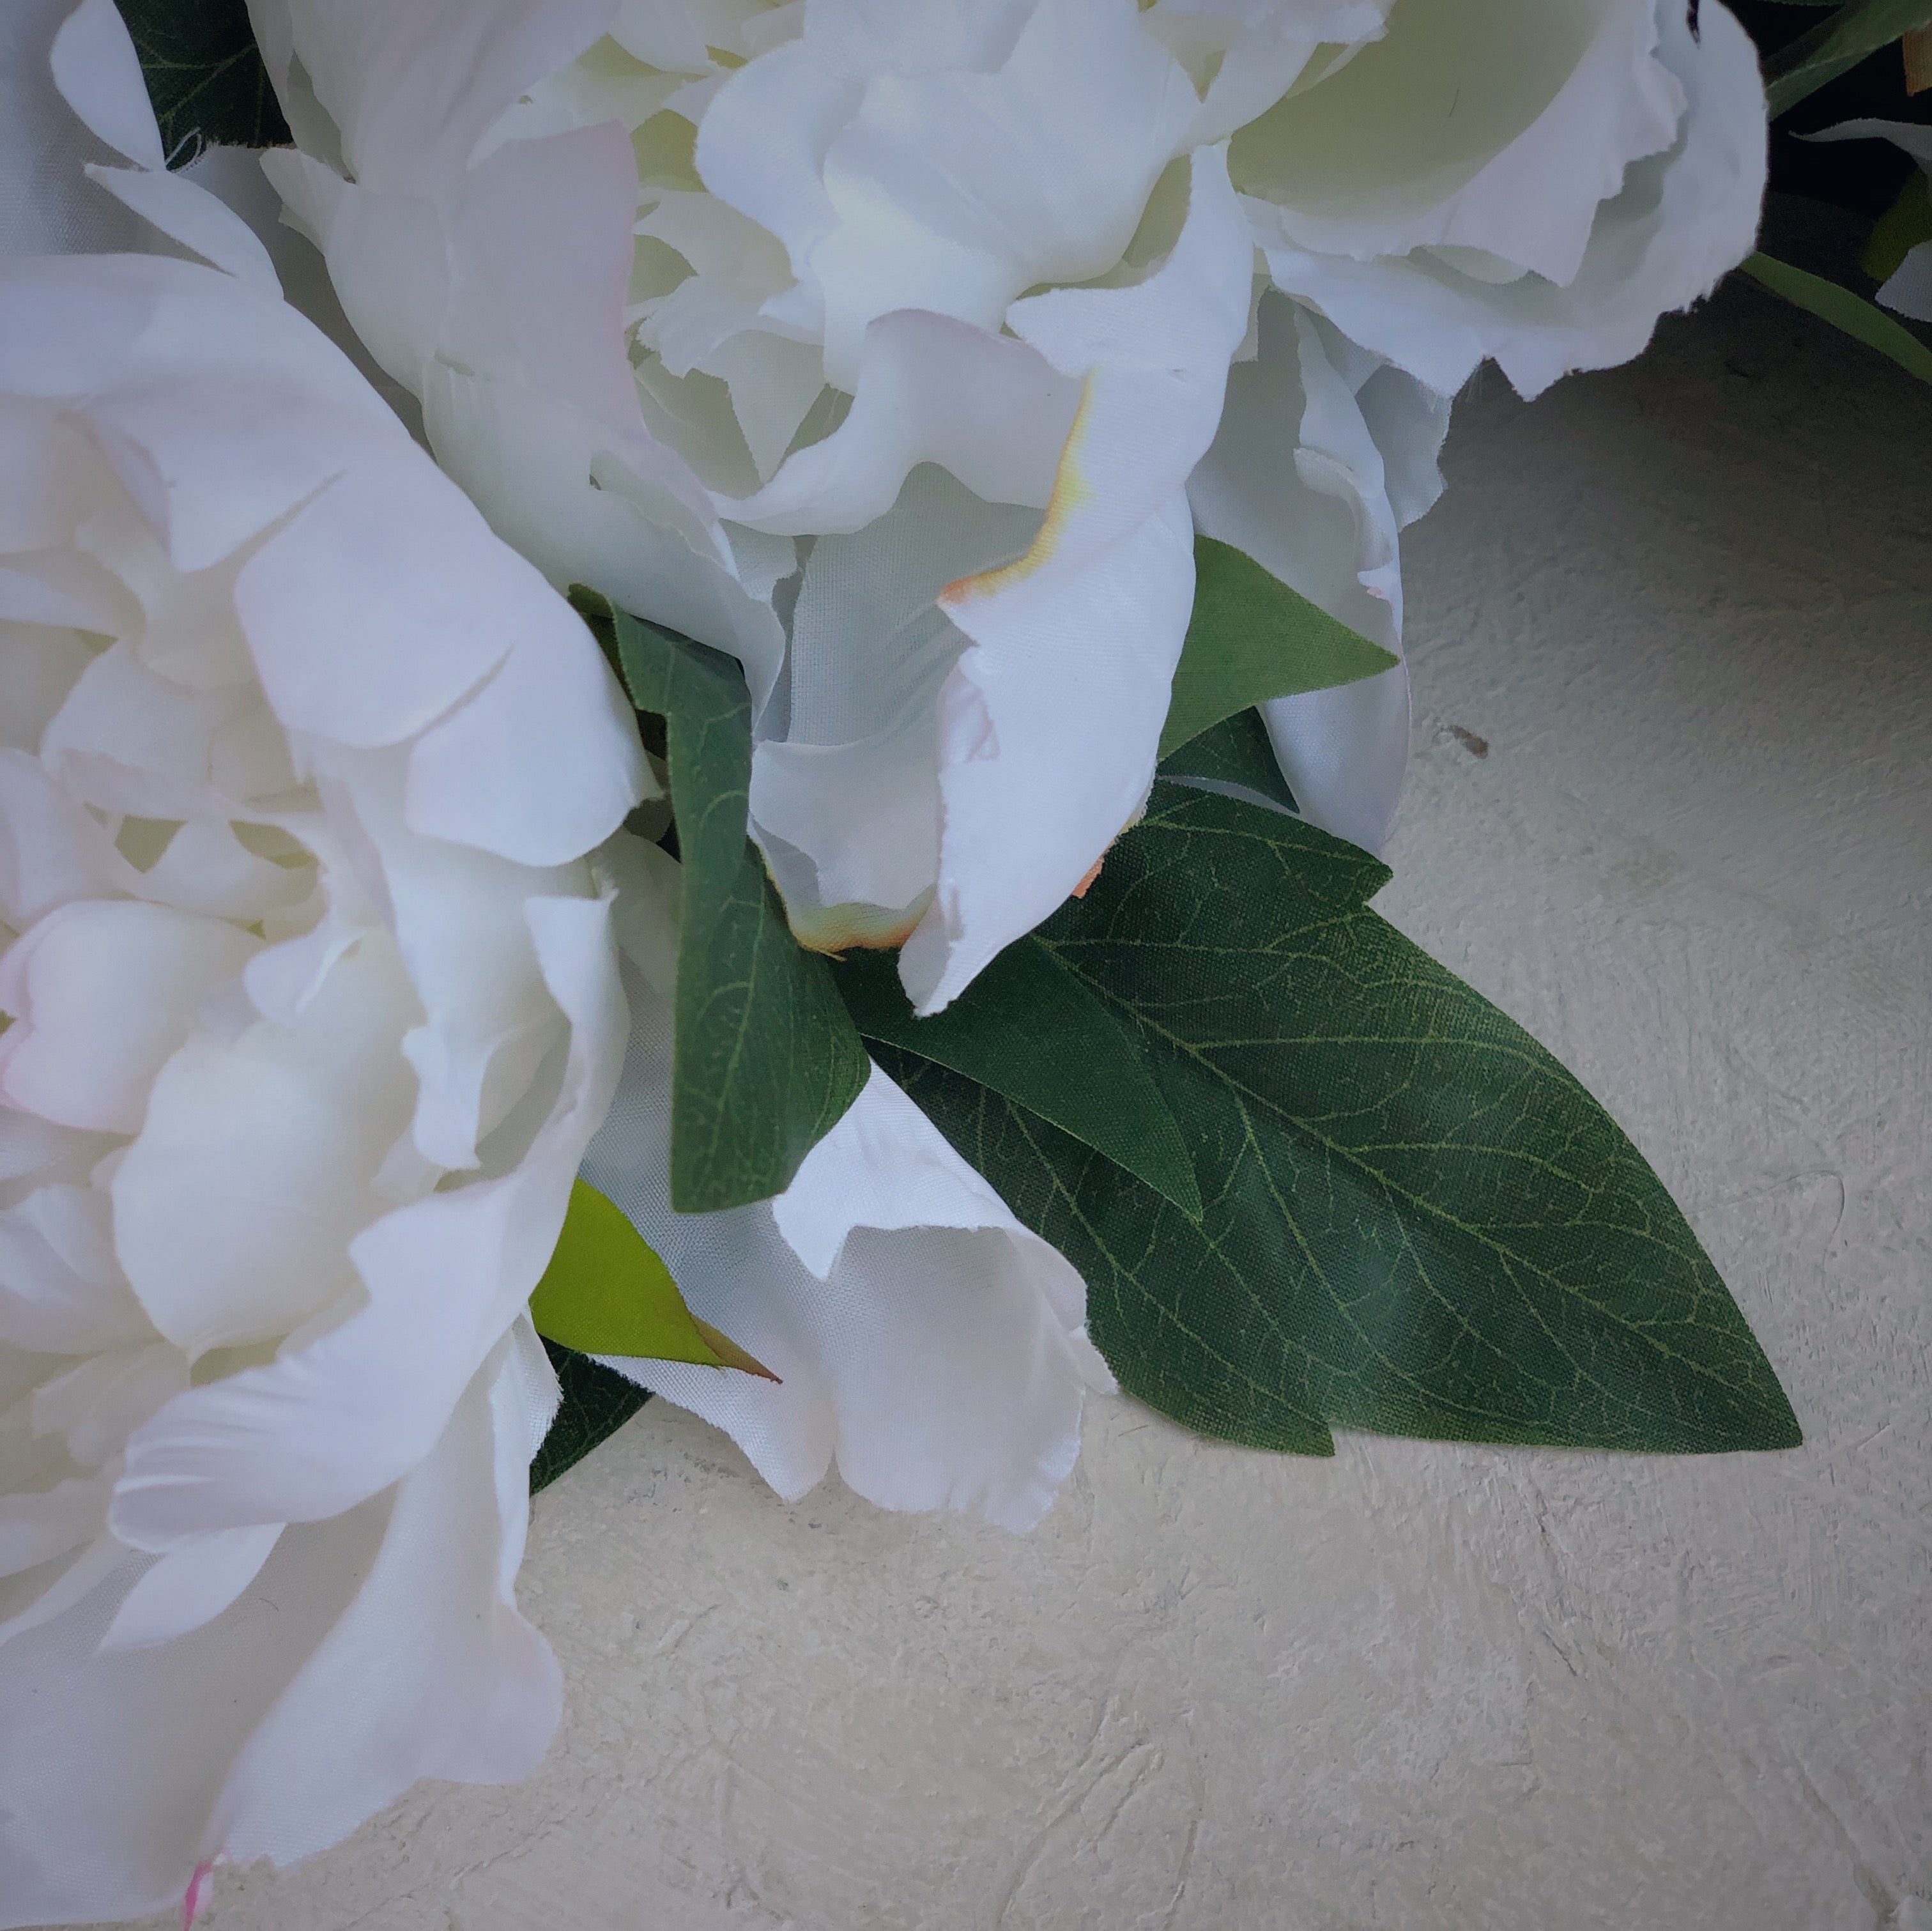 Sur mon x - curated home decor accessories Bouquet of 5 white peonies accessoire de décoration maison vintage Bouquet de 5 pivoines blanches